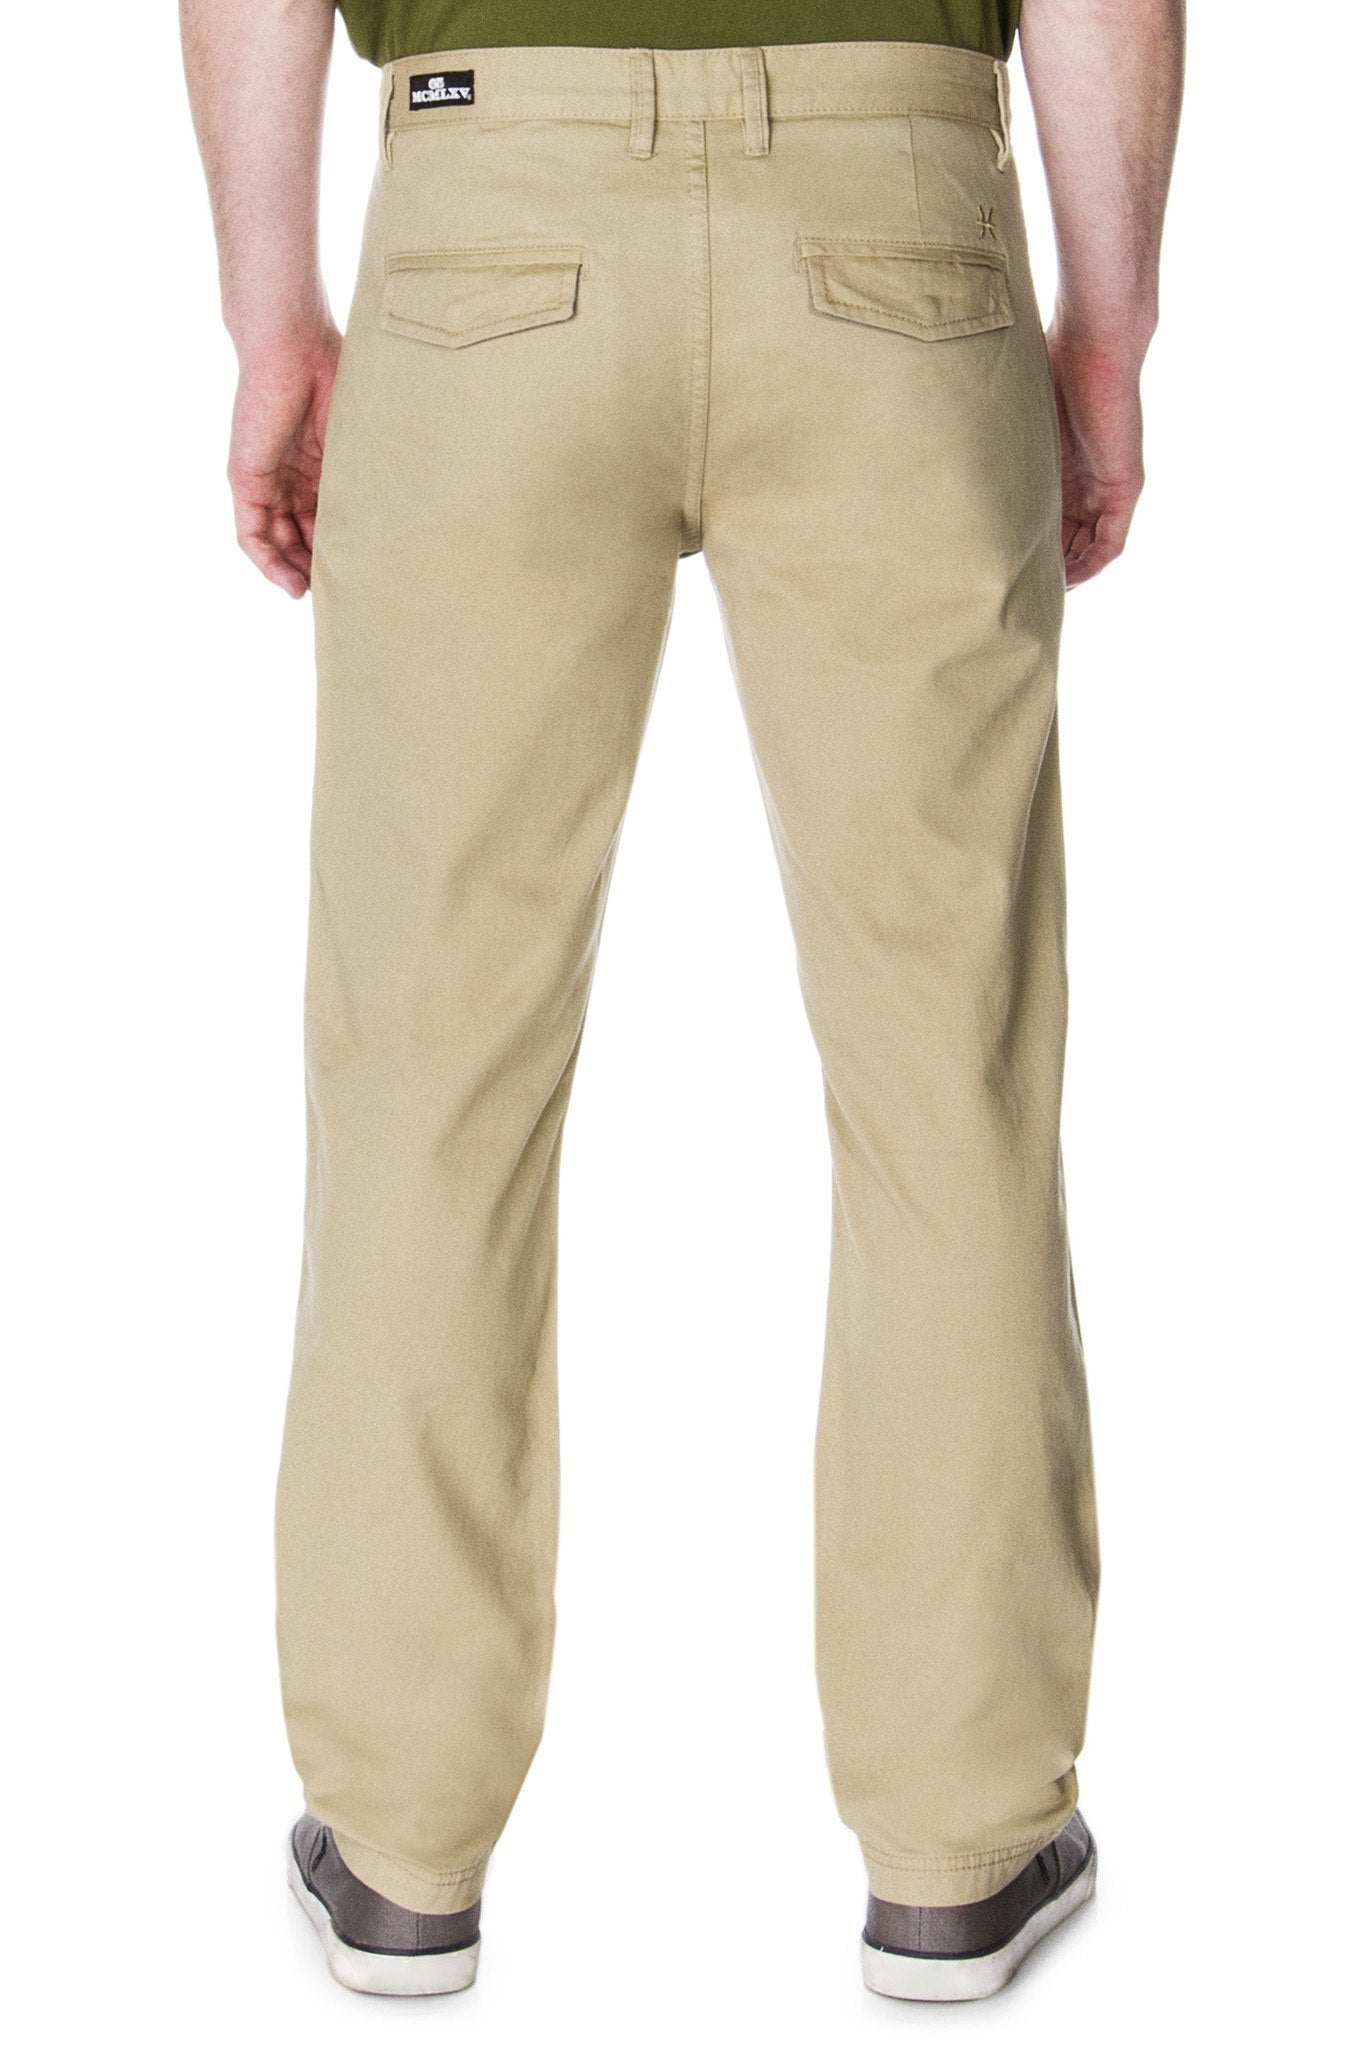 65 MCMLXV Men's Signature Slim Fit Khaki Chino Pant - Men - Apparel - Pants - Chino - Khaki - Benn~Burry